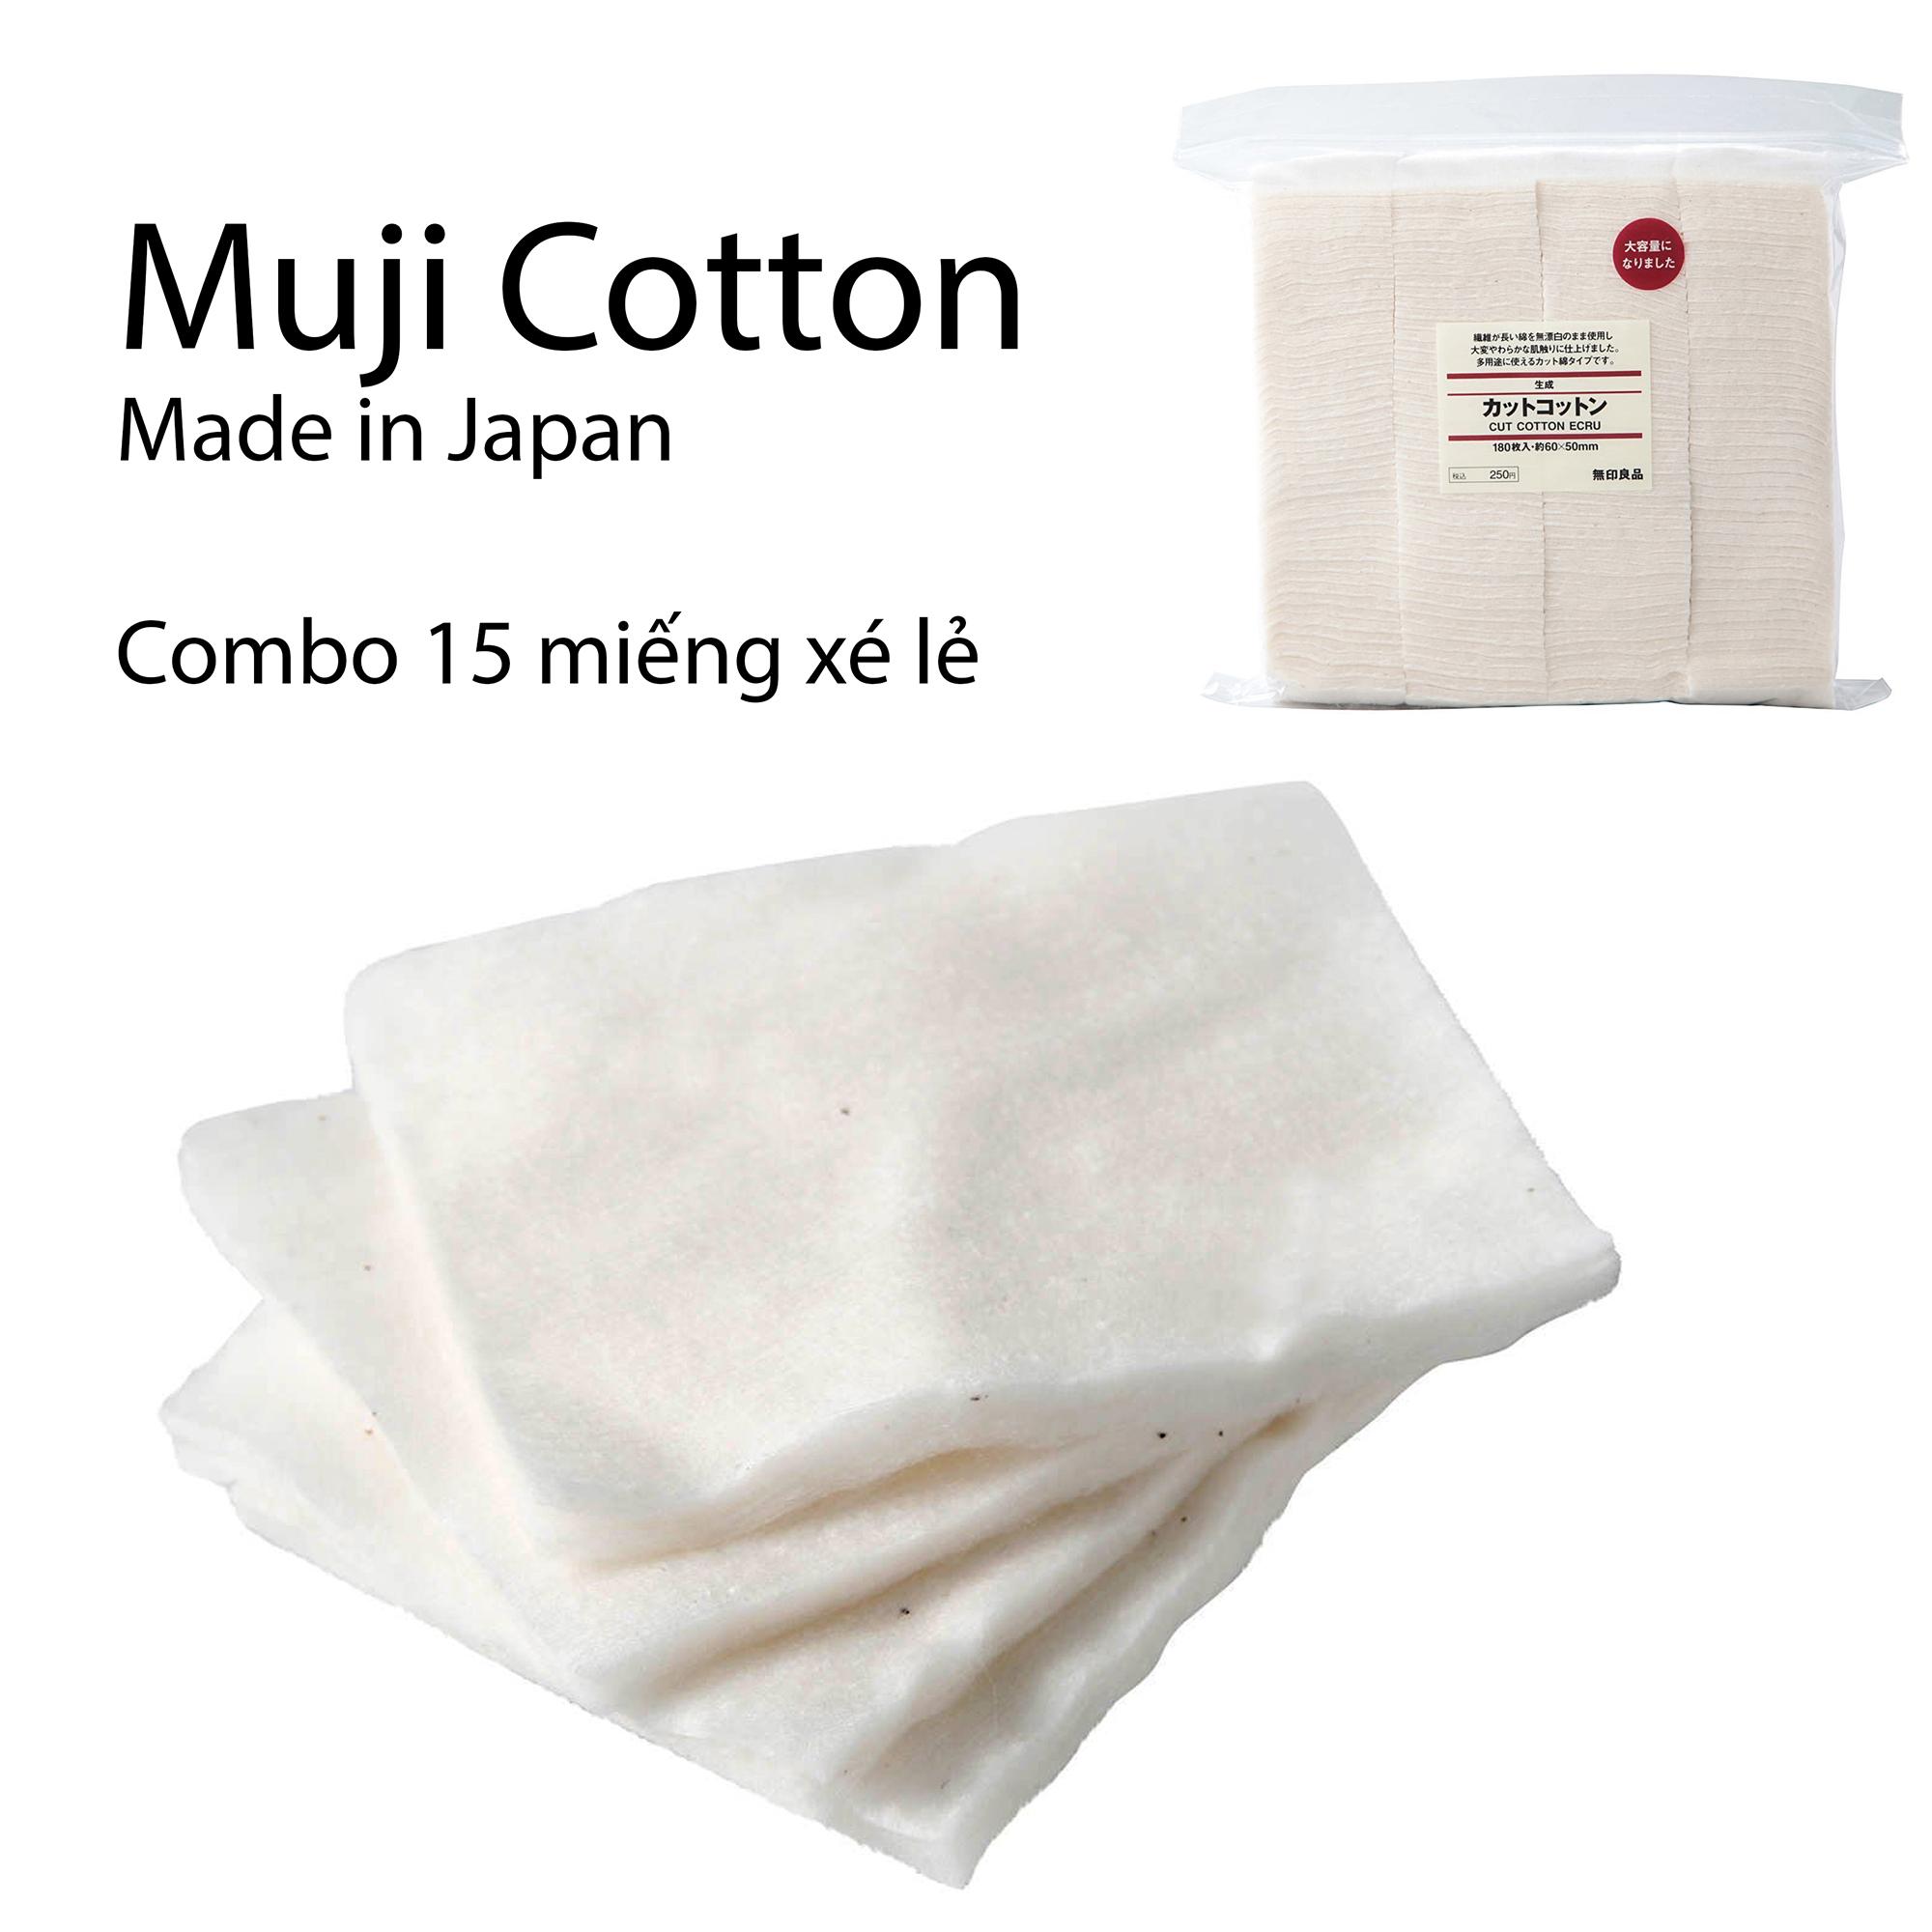 Combo Bông Muji Vape cotton nguyên chất 15 miếng & 30 miếng (Chiết lẻ)